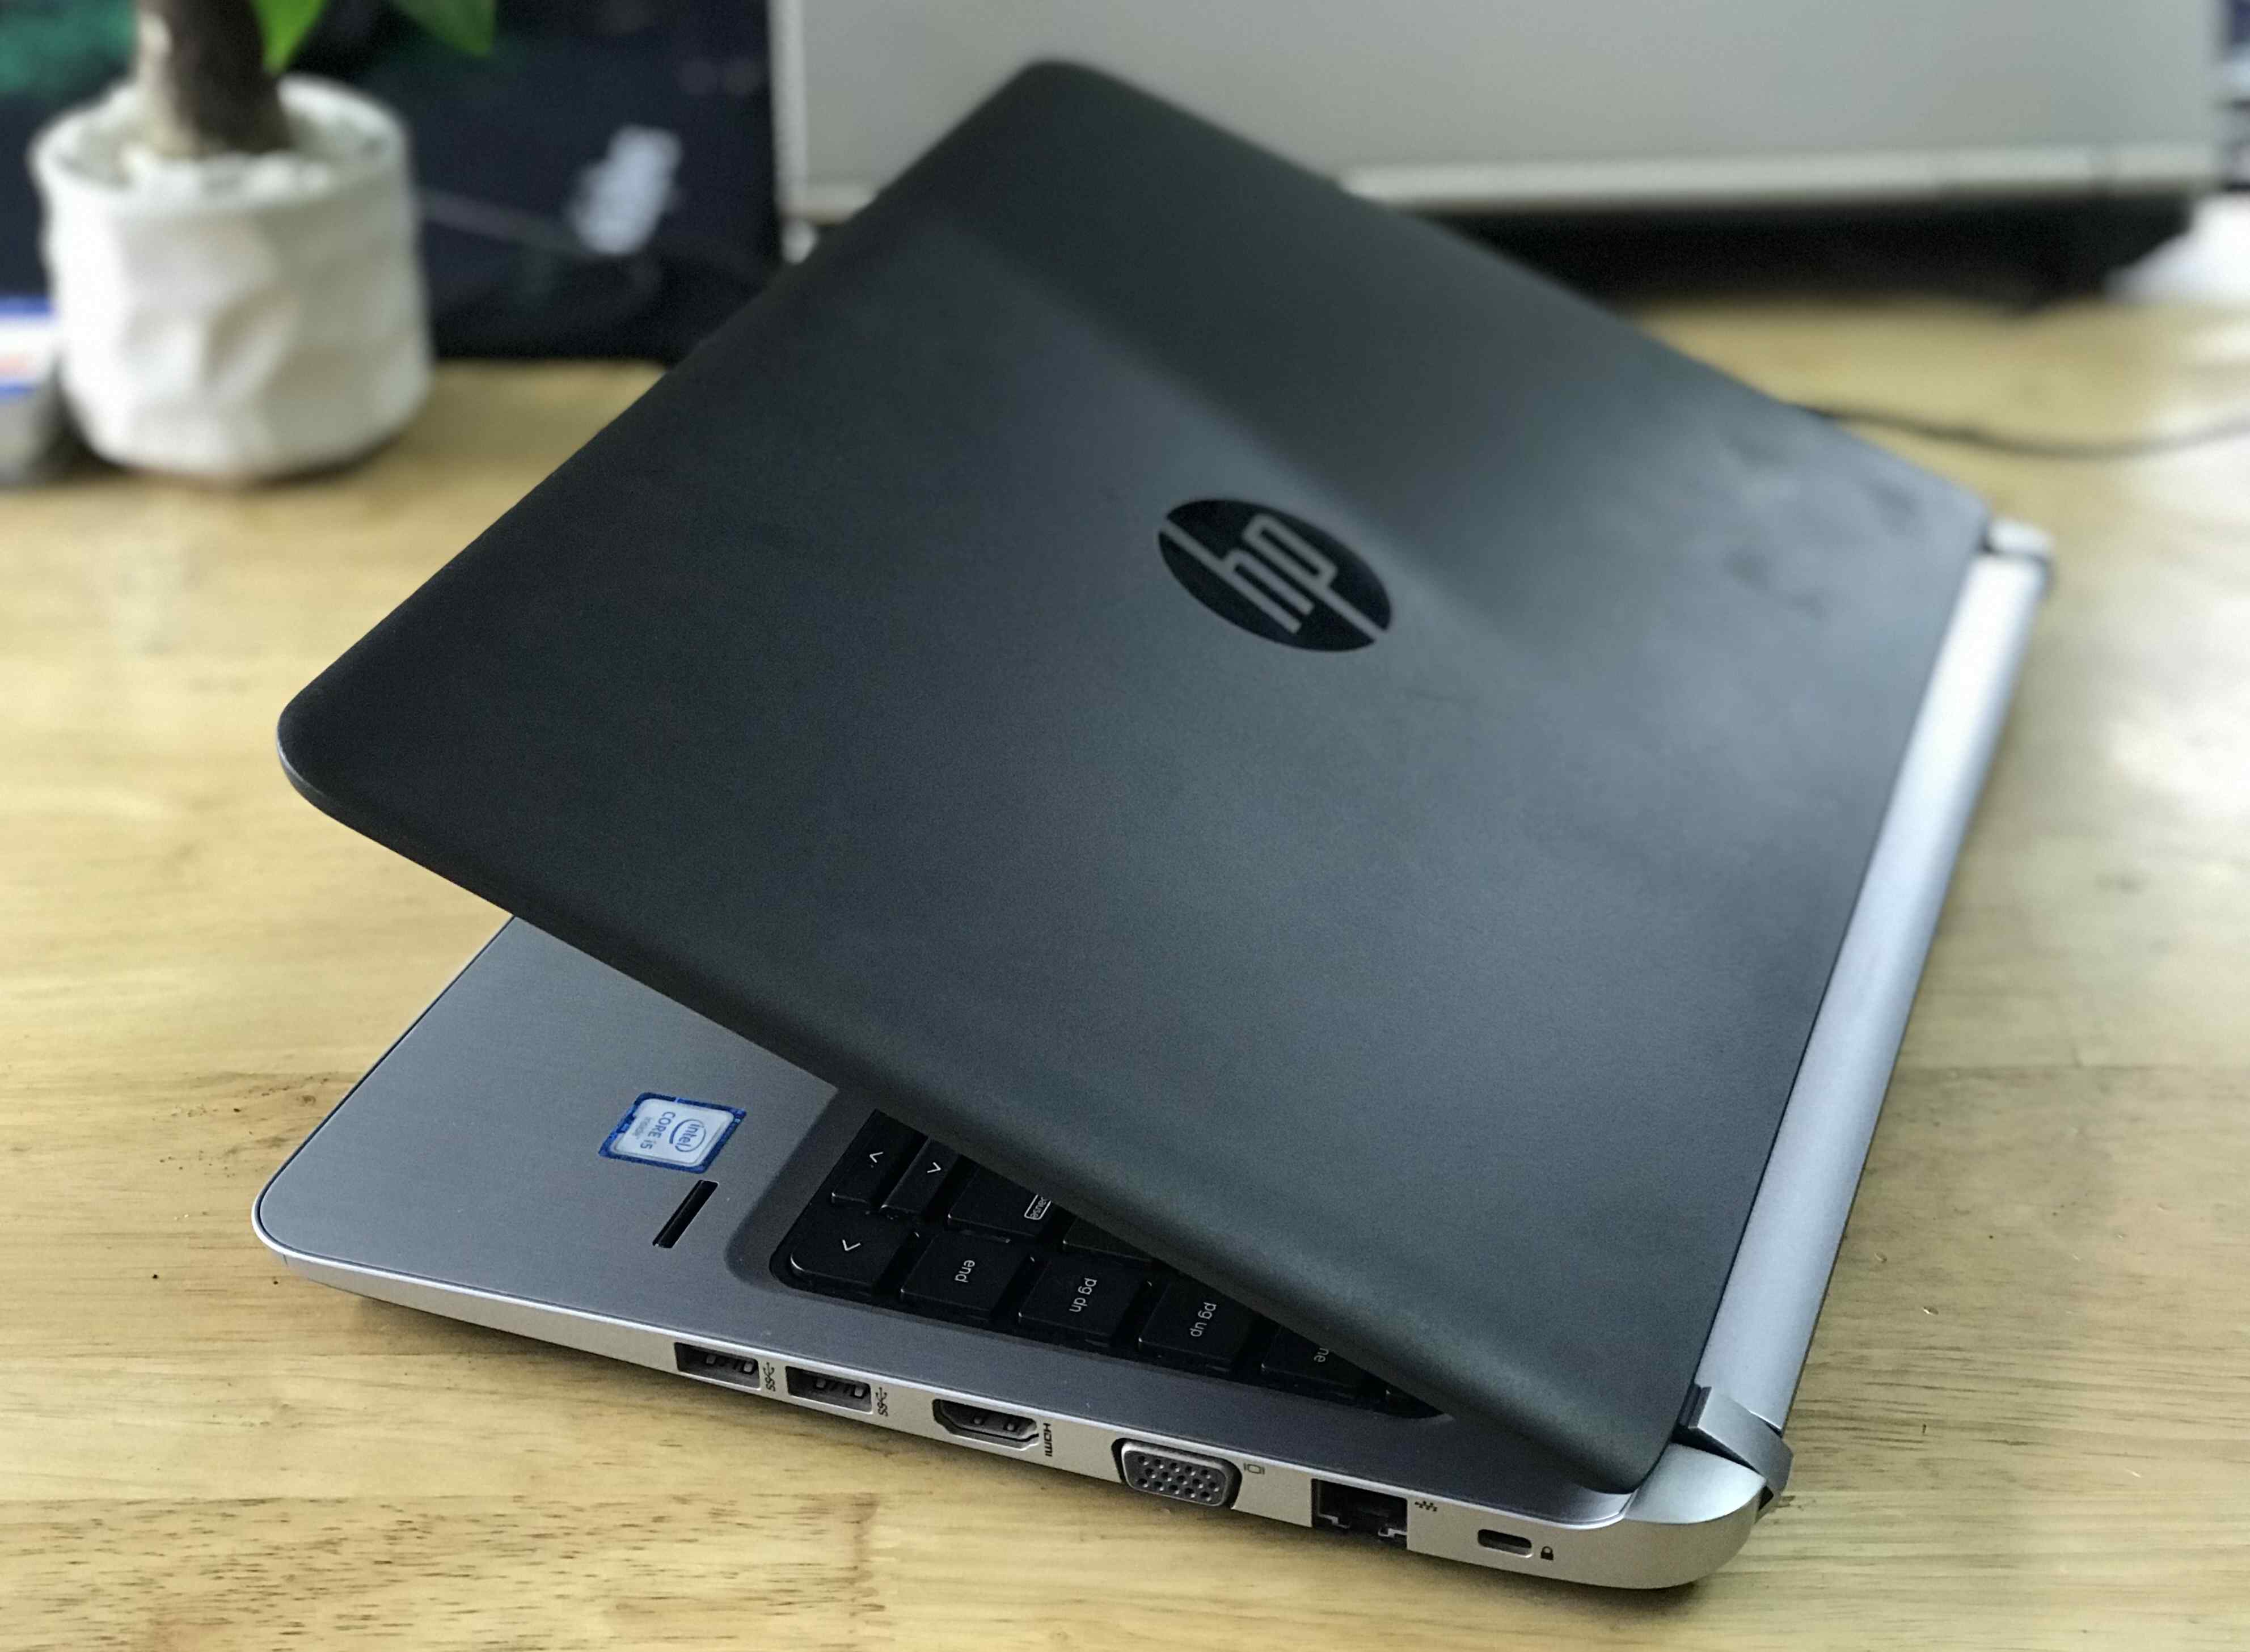 bán laptop cũ hp probook 430 g3 giá rẻ tại hà nội